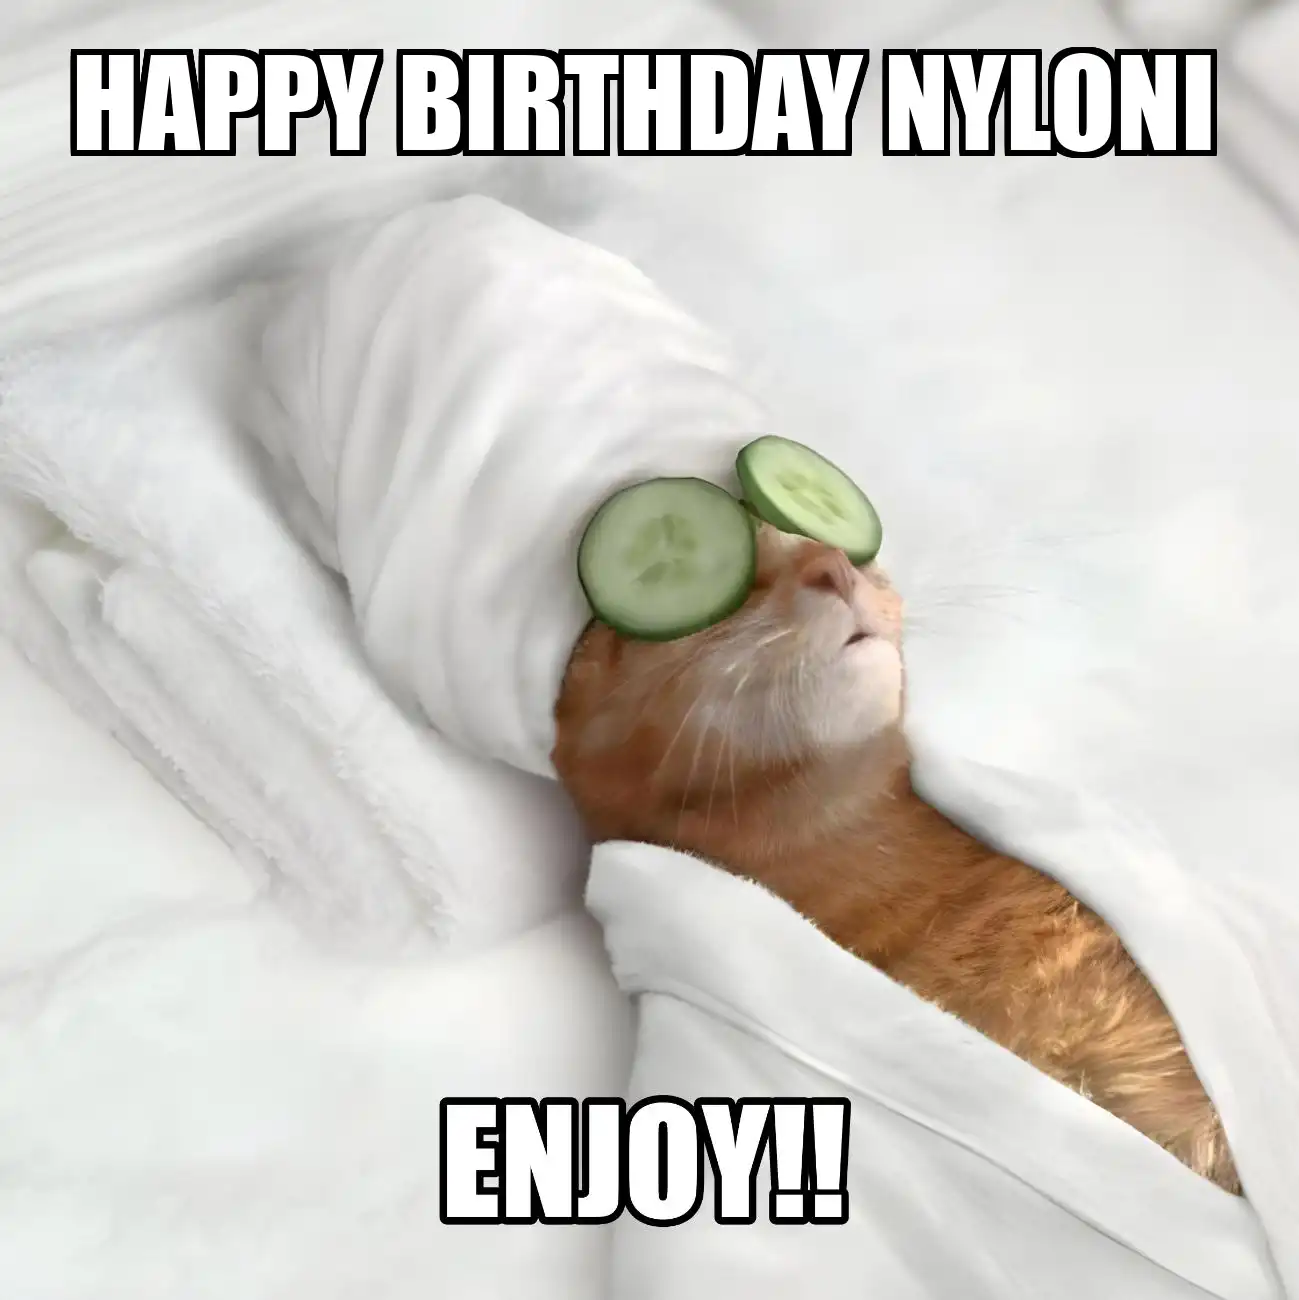 Happy Birthday Nyloni Enjoy Cat Meme